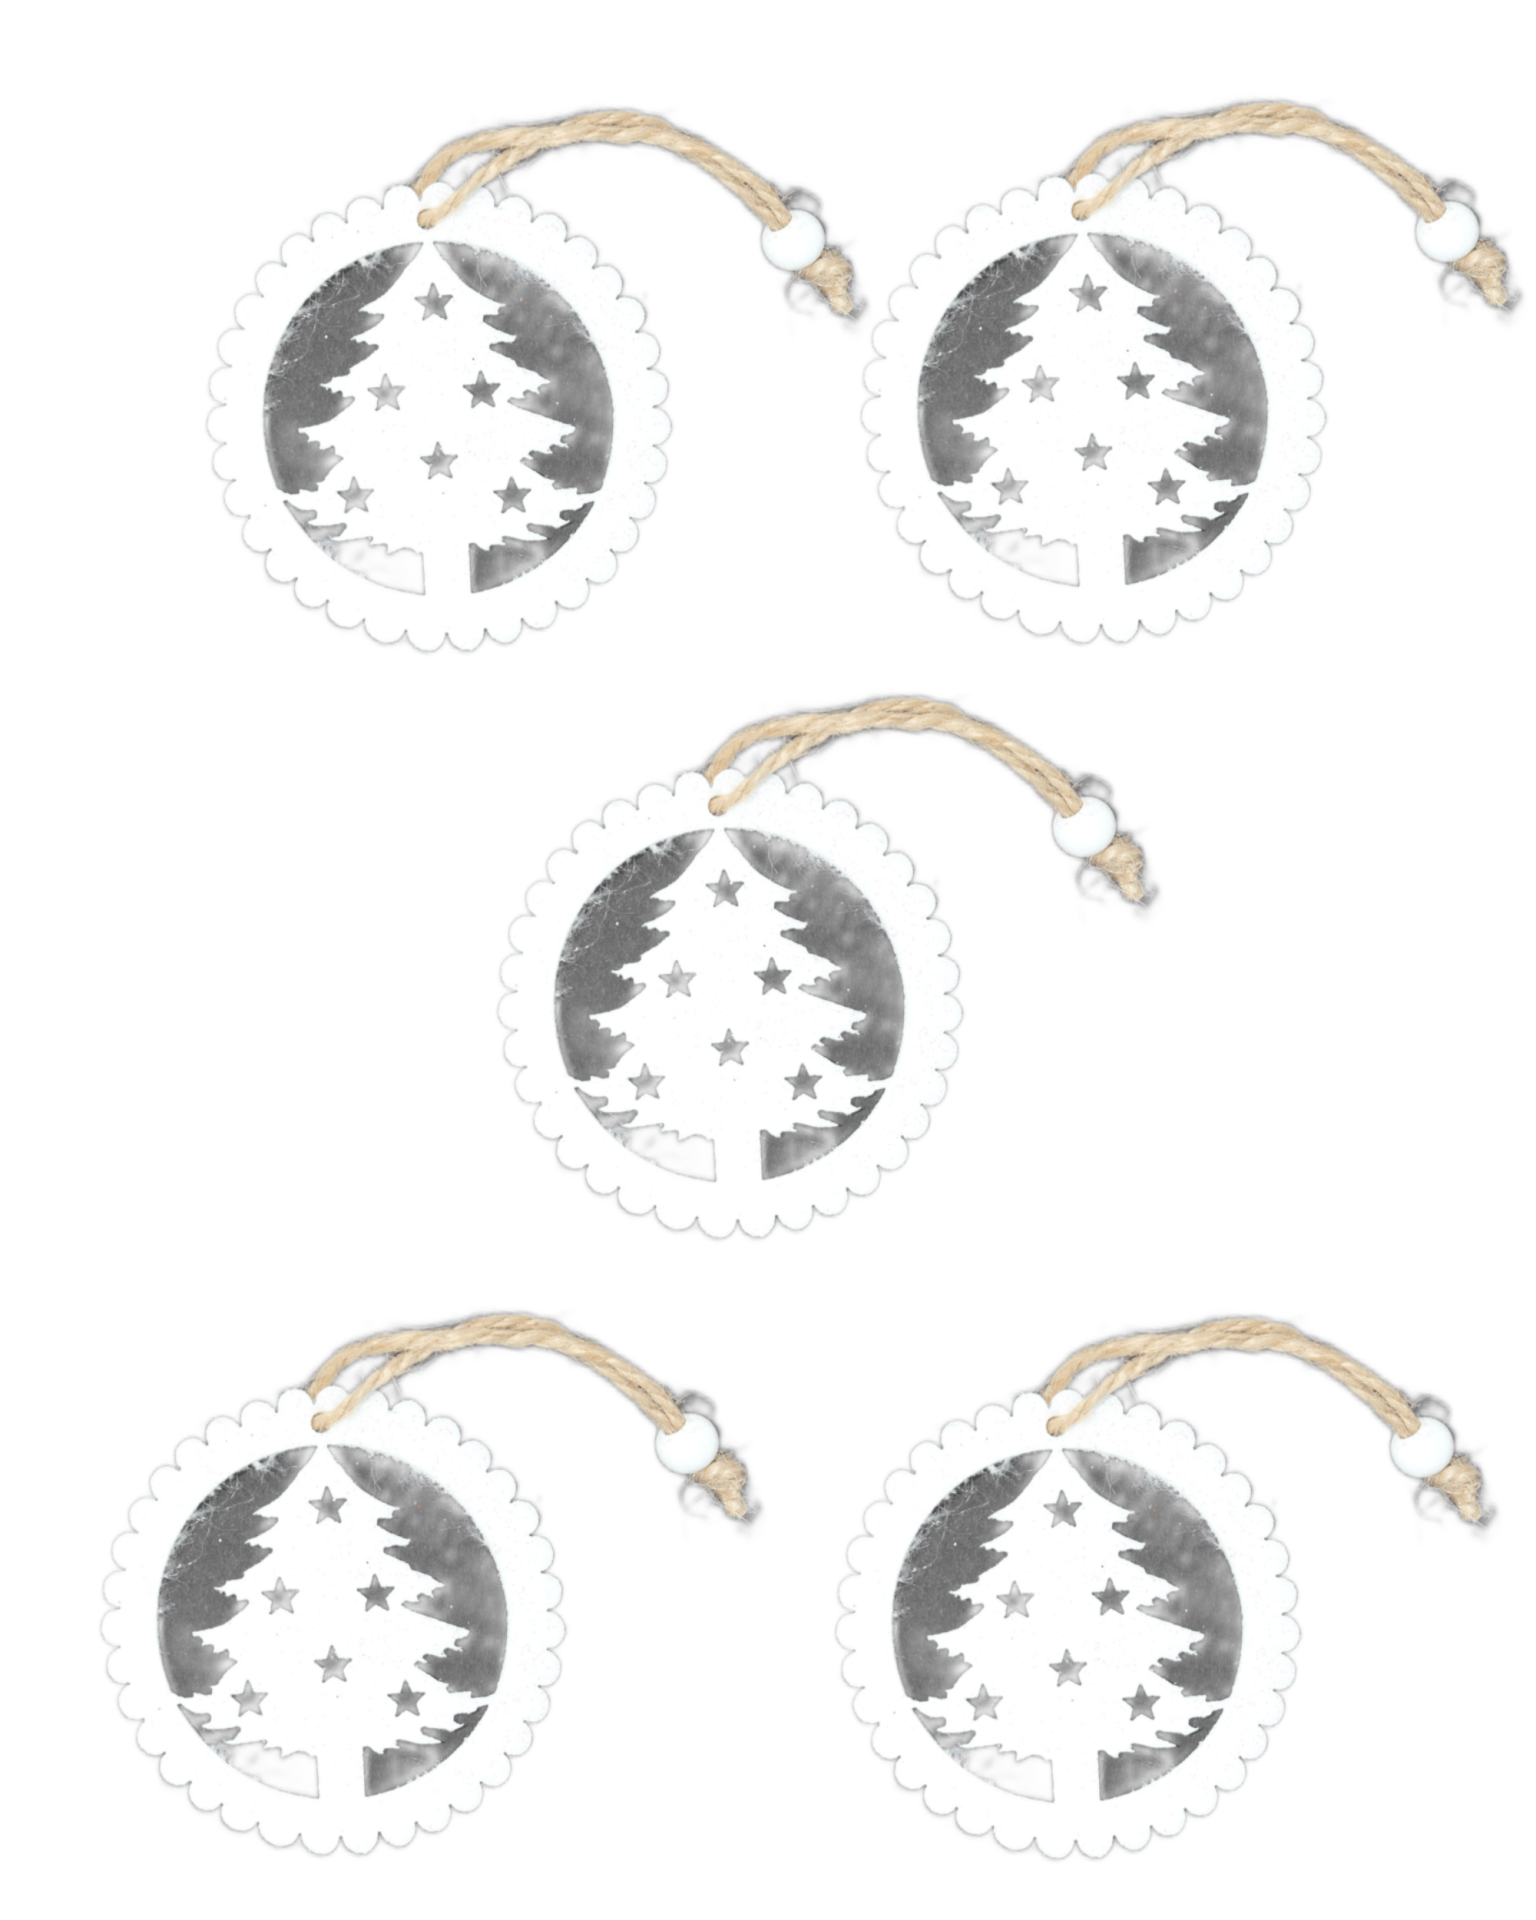 Yılbaşı Ağacı Süsleme Seti - Simli Keçe Hediye Paketi Süsü - 5 Adet 8 cm ÇÇ001 Beyaz Renk